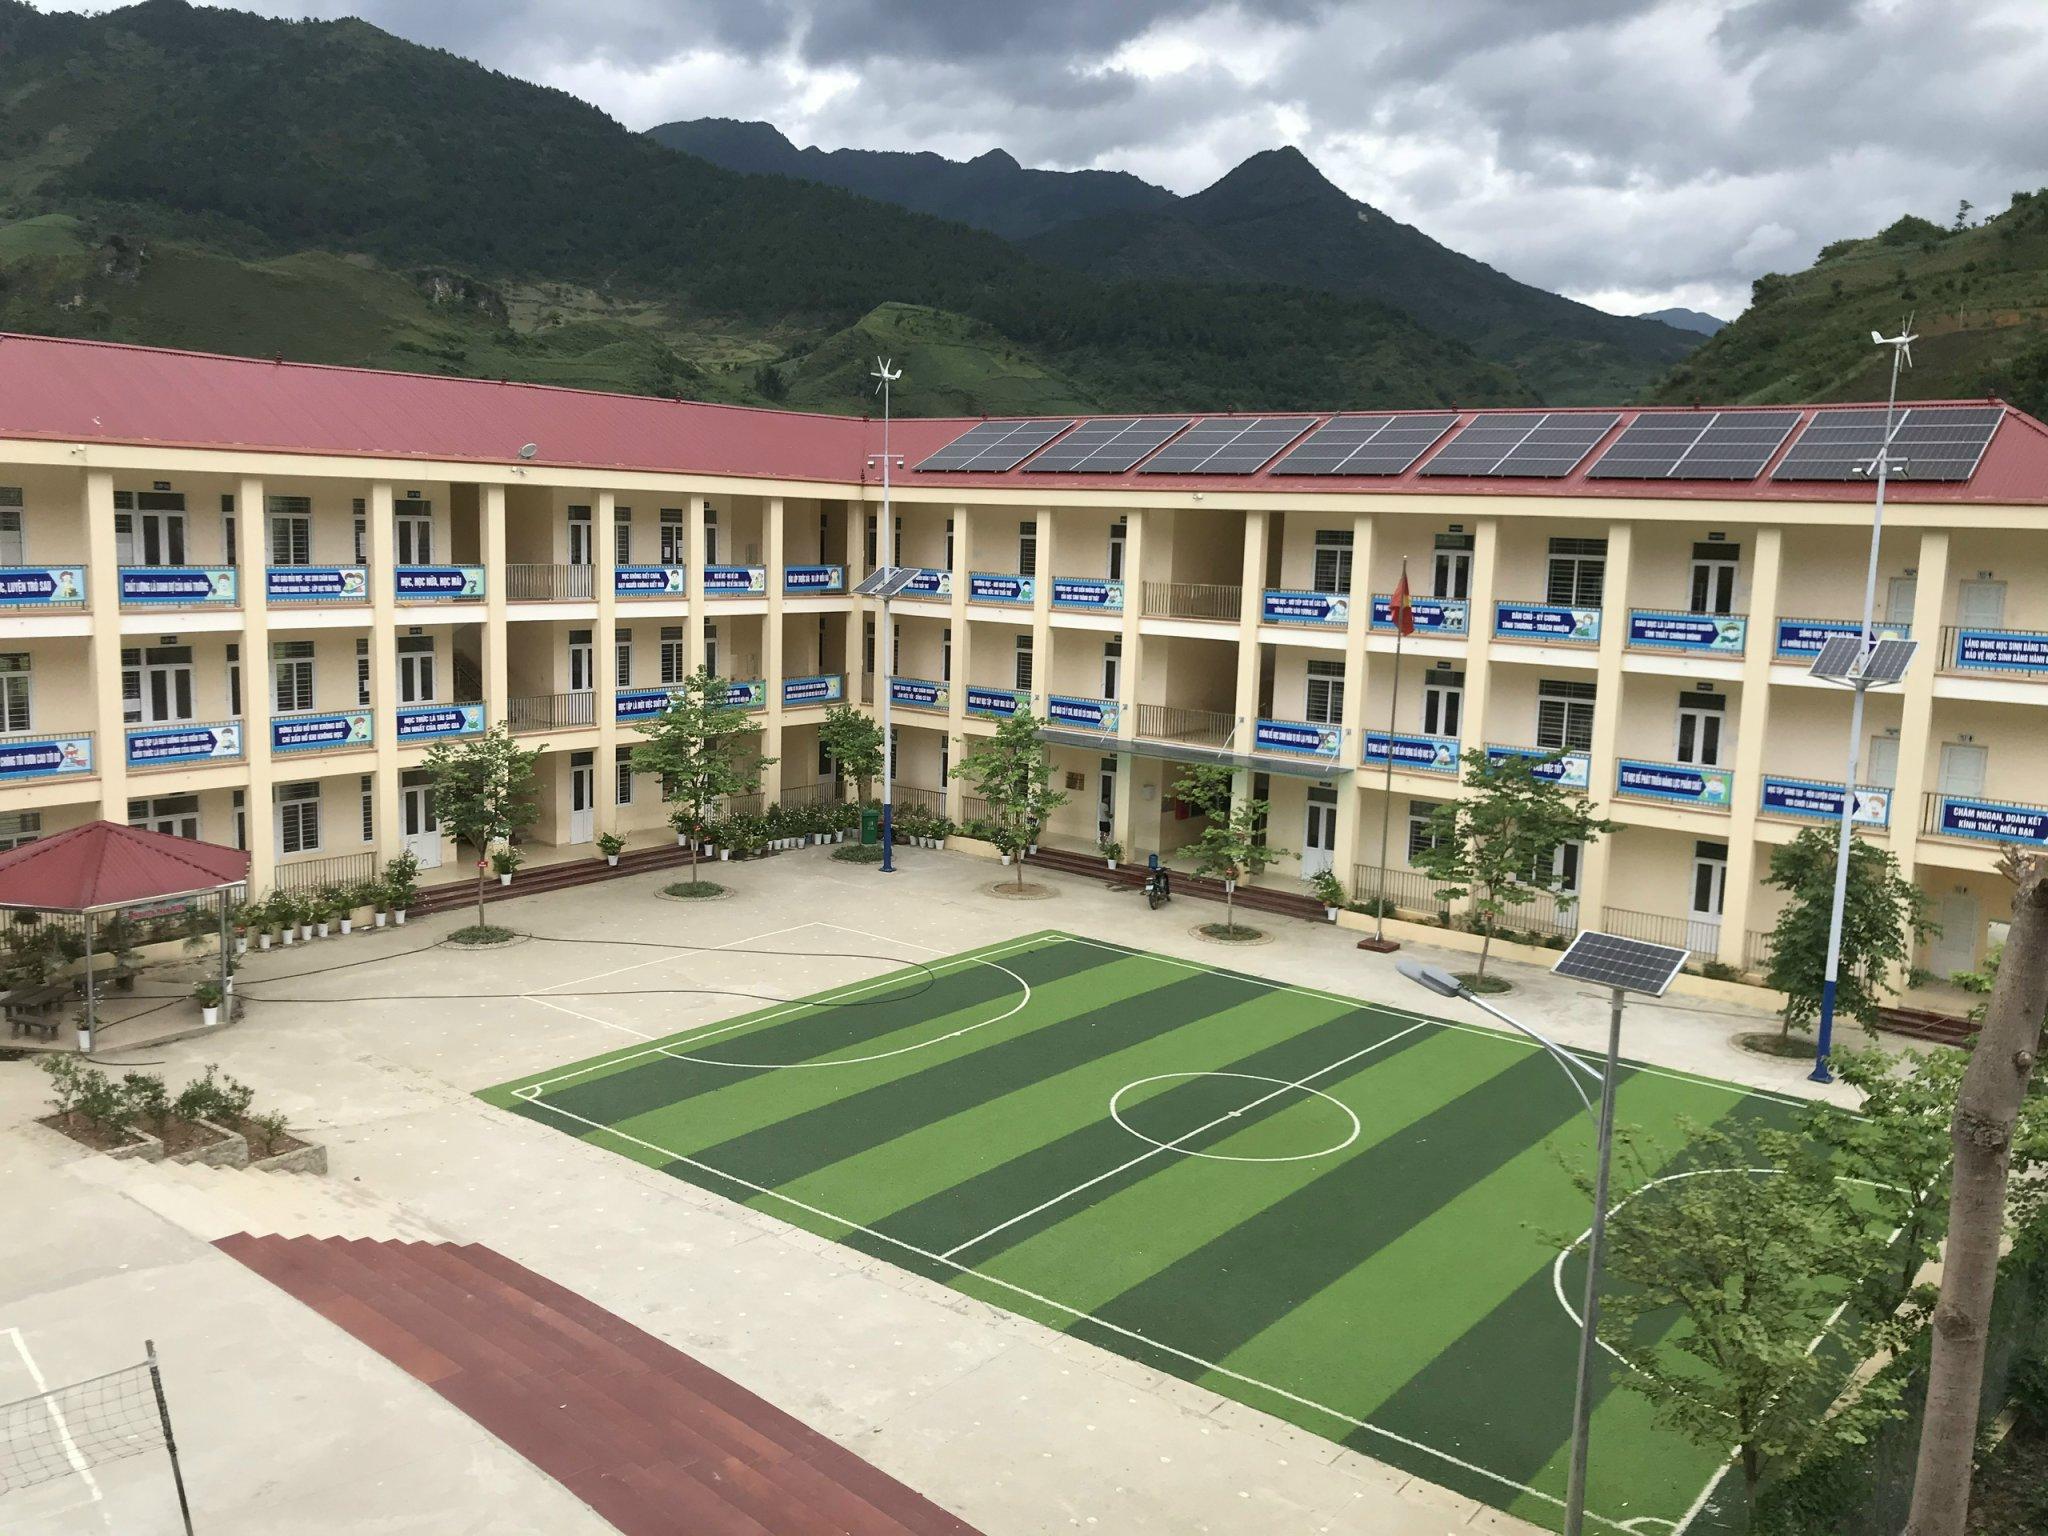 Trường phổ thông dân tộc Bán trú tiểu học Cao Phạ